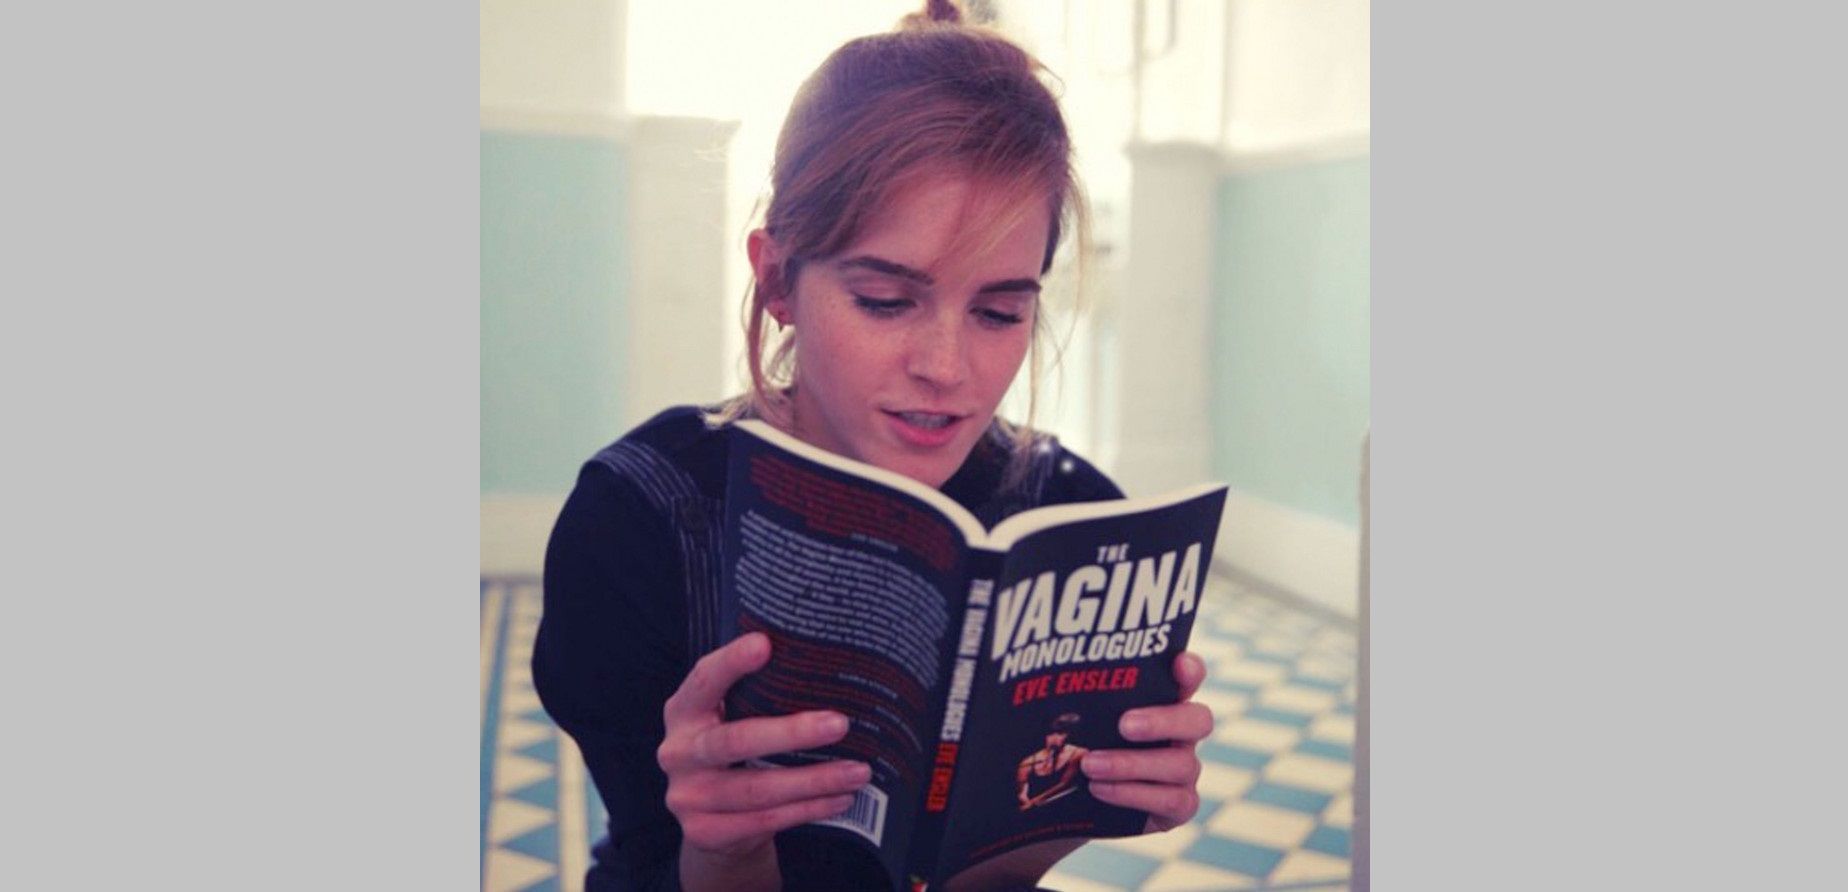 3. Emma Watson The Vagina Monologues